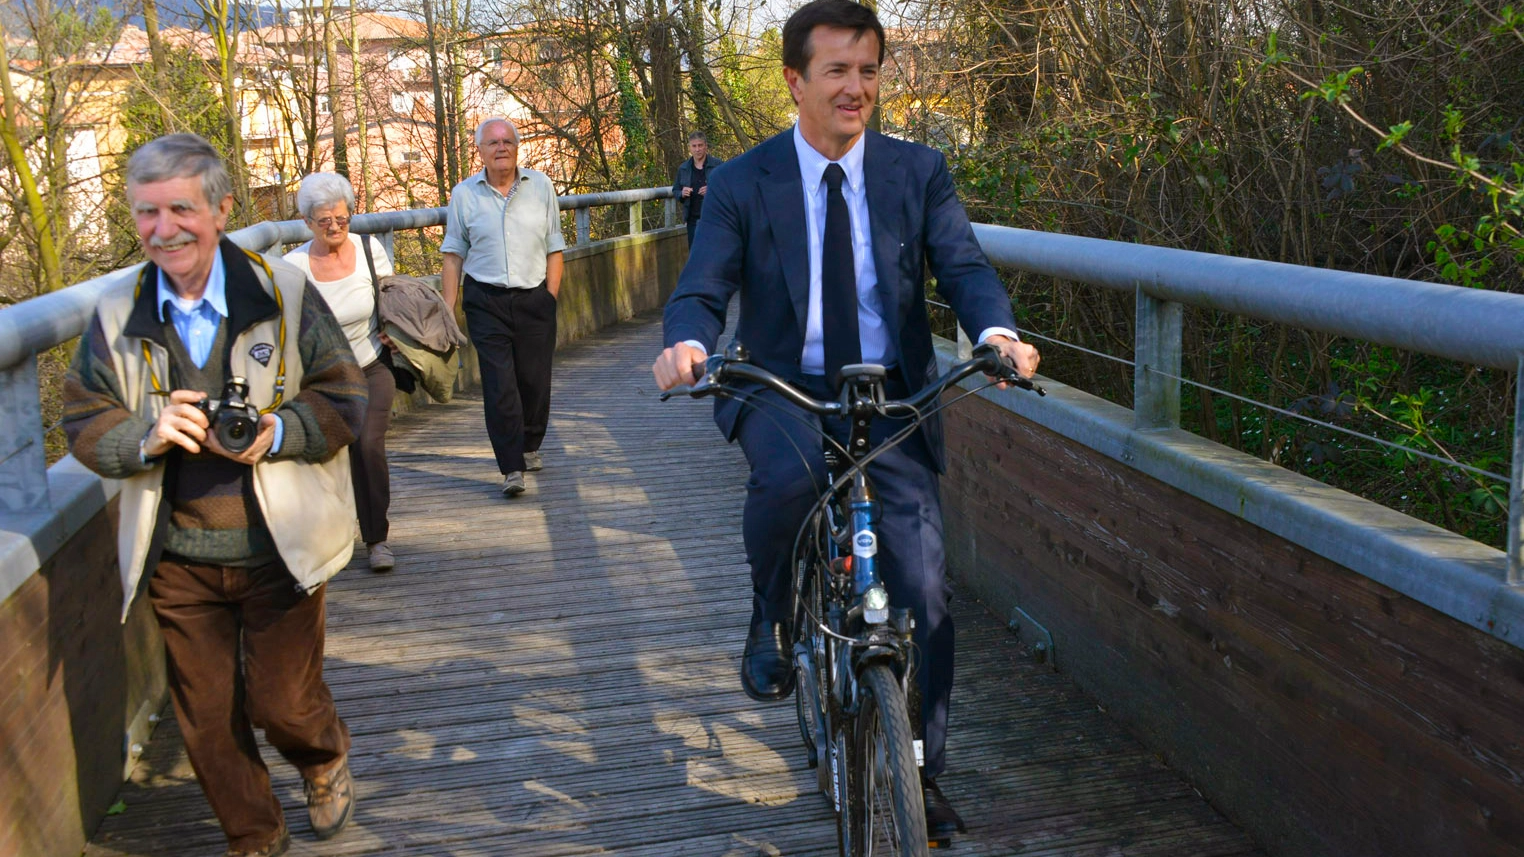 Riapre la pista ciclopedonale e il sindaco Gori sale in sella alla sua bici (DePascale)